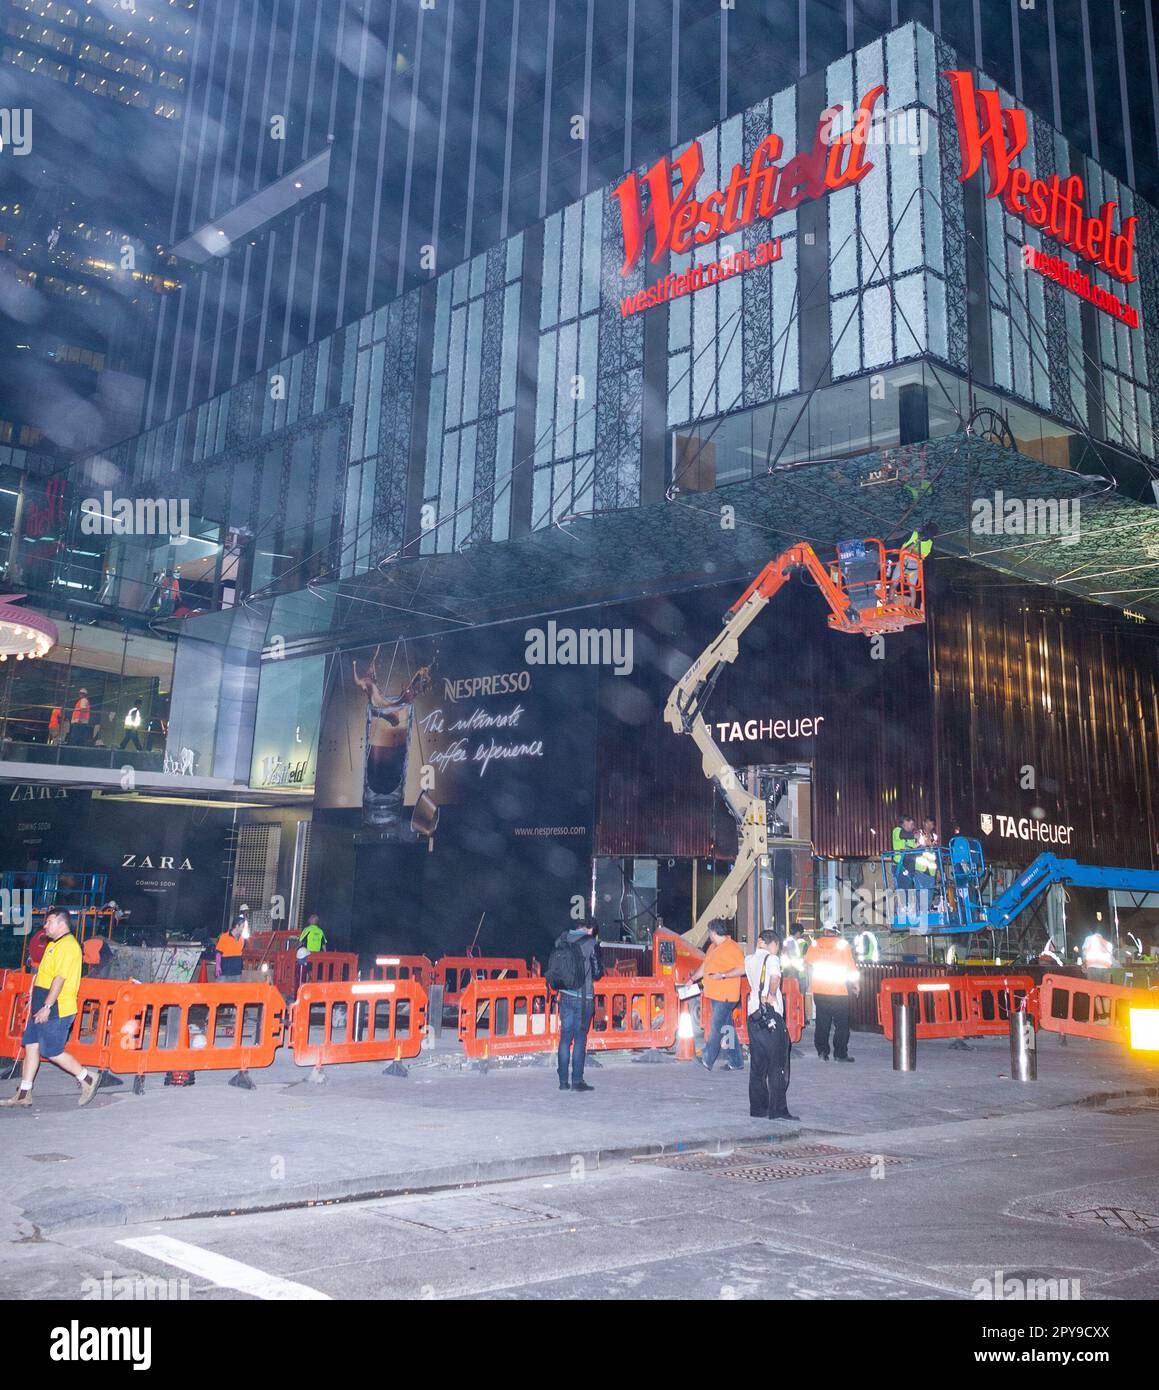 27 ottobre 20120: Costruzione e ristrutturazione del centro commerciale Westfield di Sydney, Australia, prima del suo rilancio con marchi di alta classe e nuovi negozi di punta. Foto Stock